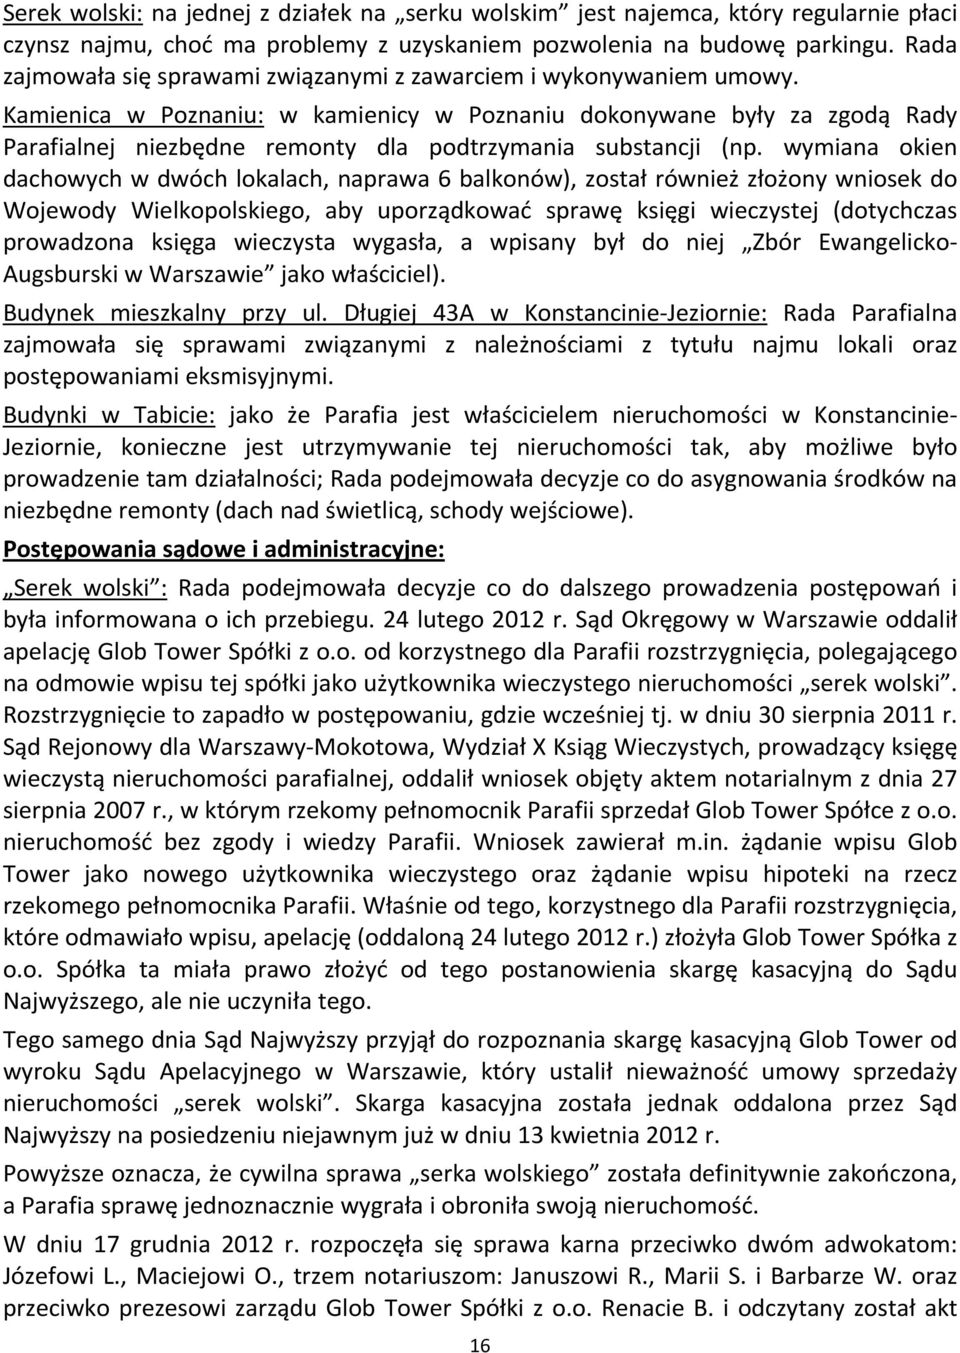 Kamienica w Poznaniu: w kamienicy w Poznaniu dokonywane były za zgodą Rady Parafialnej niezbędne remonty dla podtrzymania substancji (np.